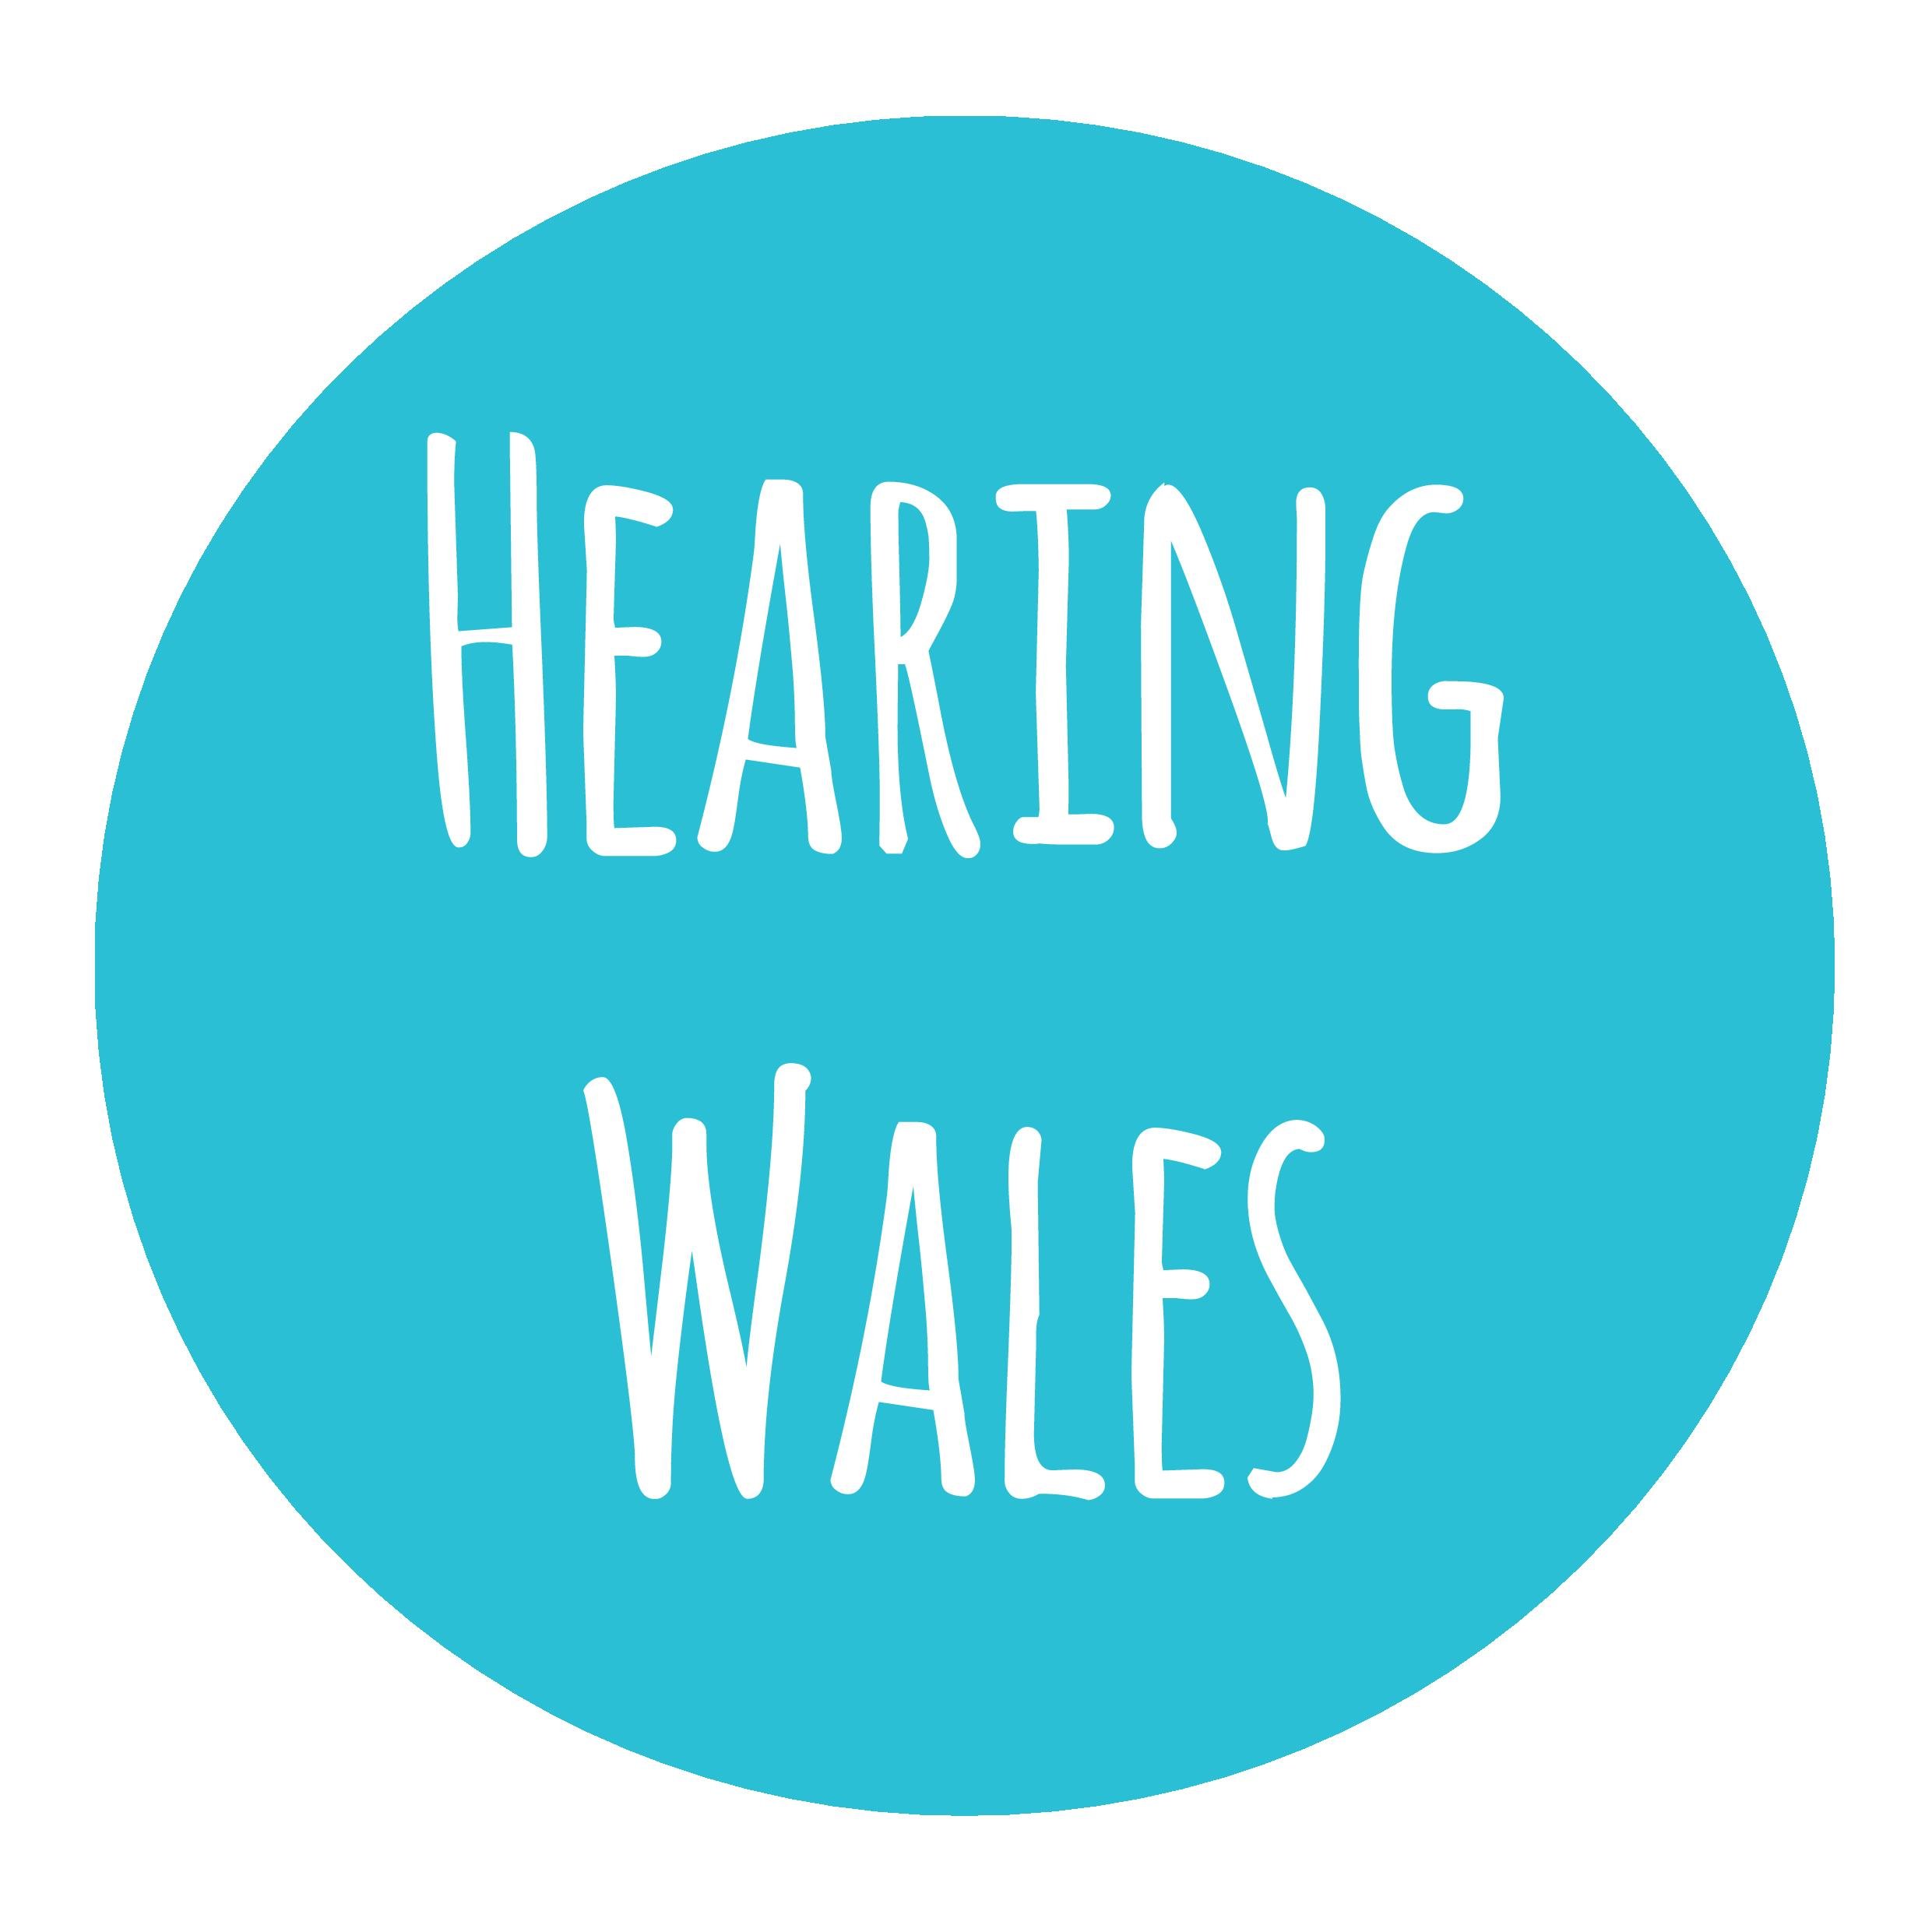 Hearing Wales